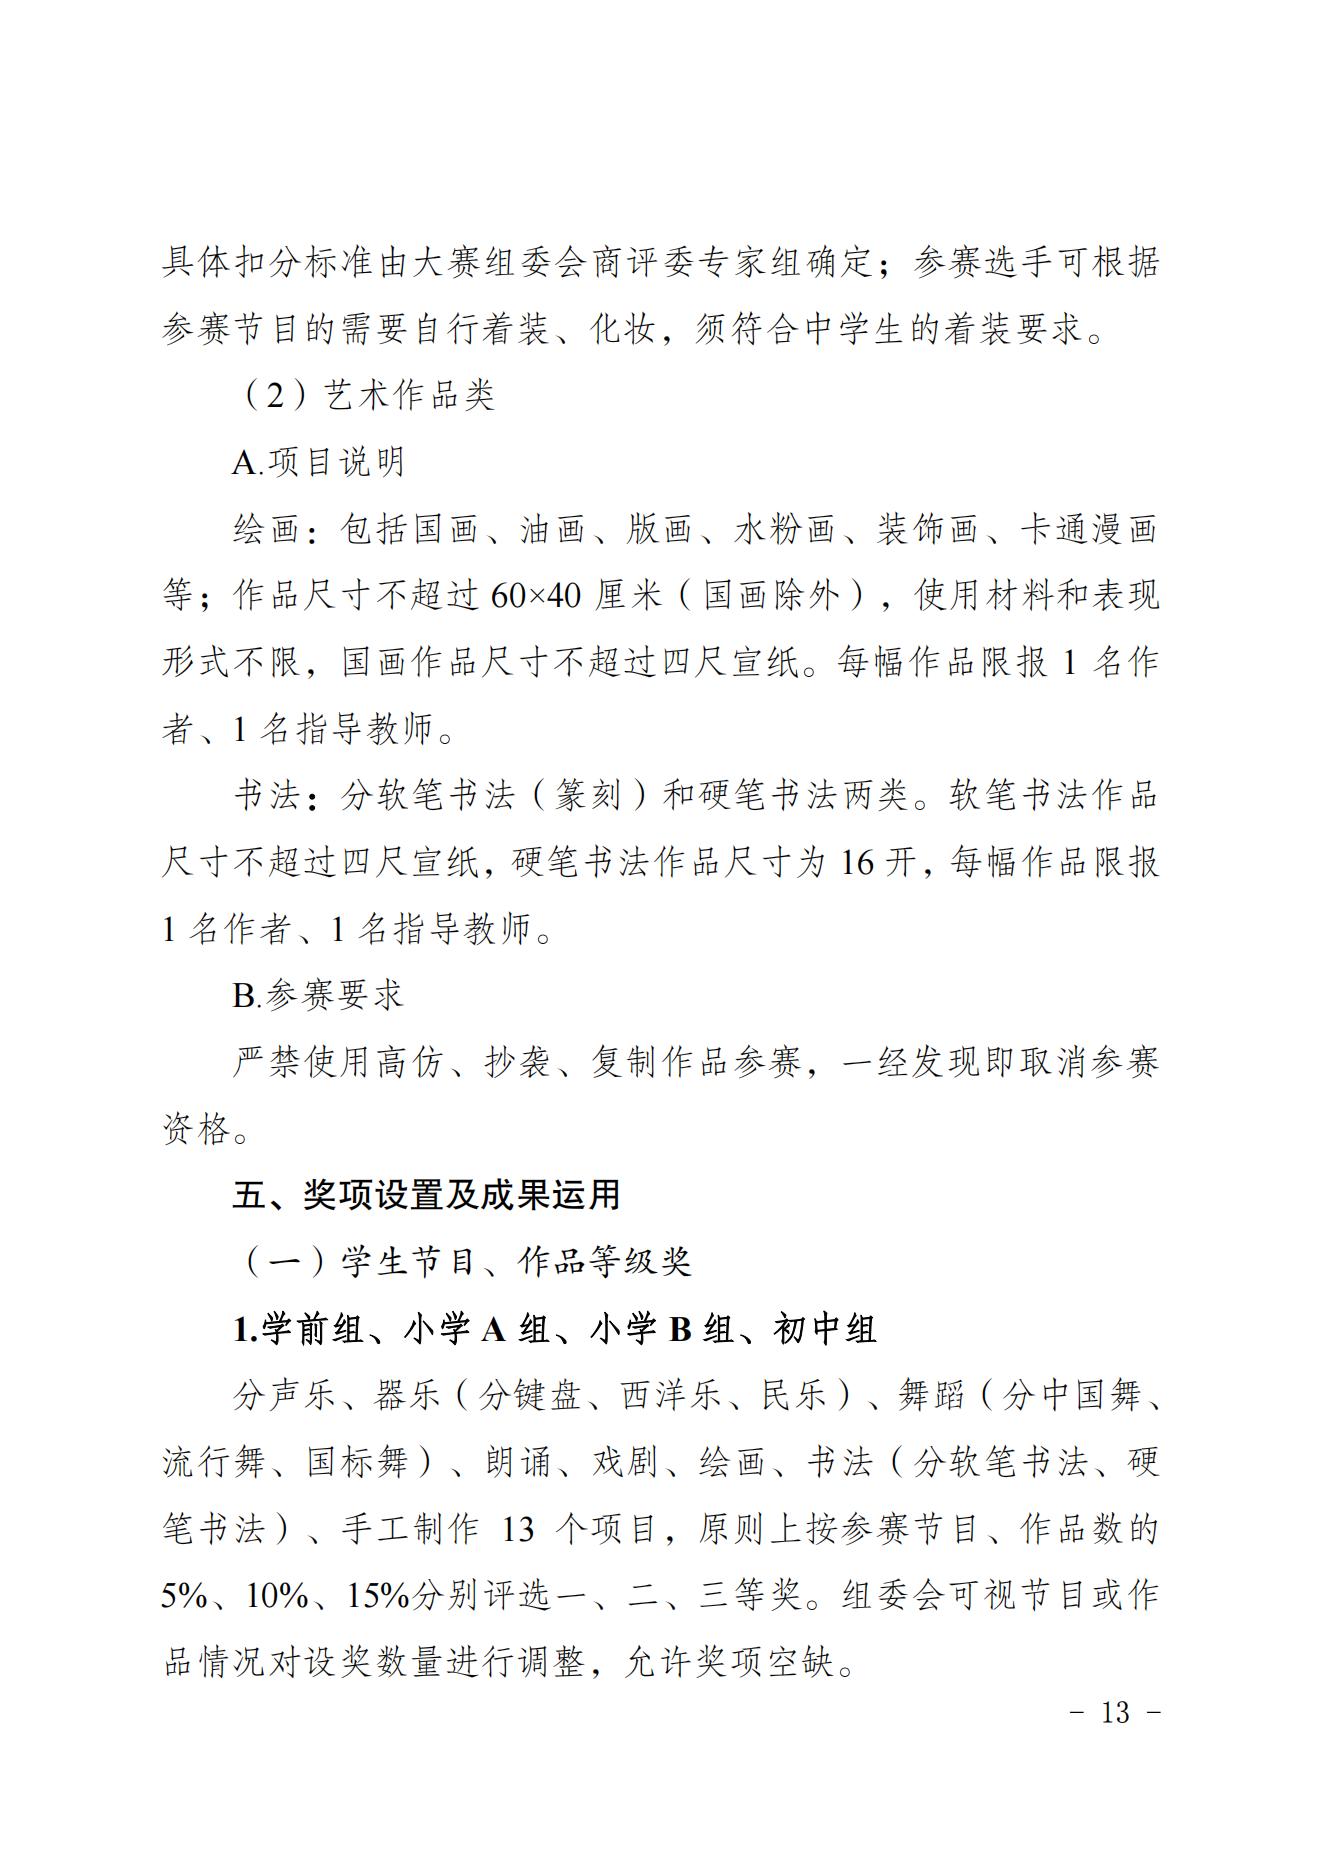 2022共青团重庆市委关于印发重庆市第十七届中小学生才艺大赛活动方案的通知 第13张